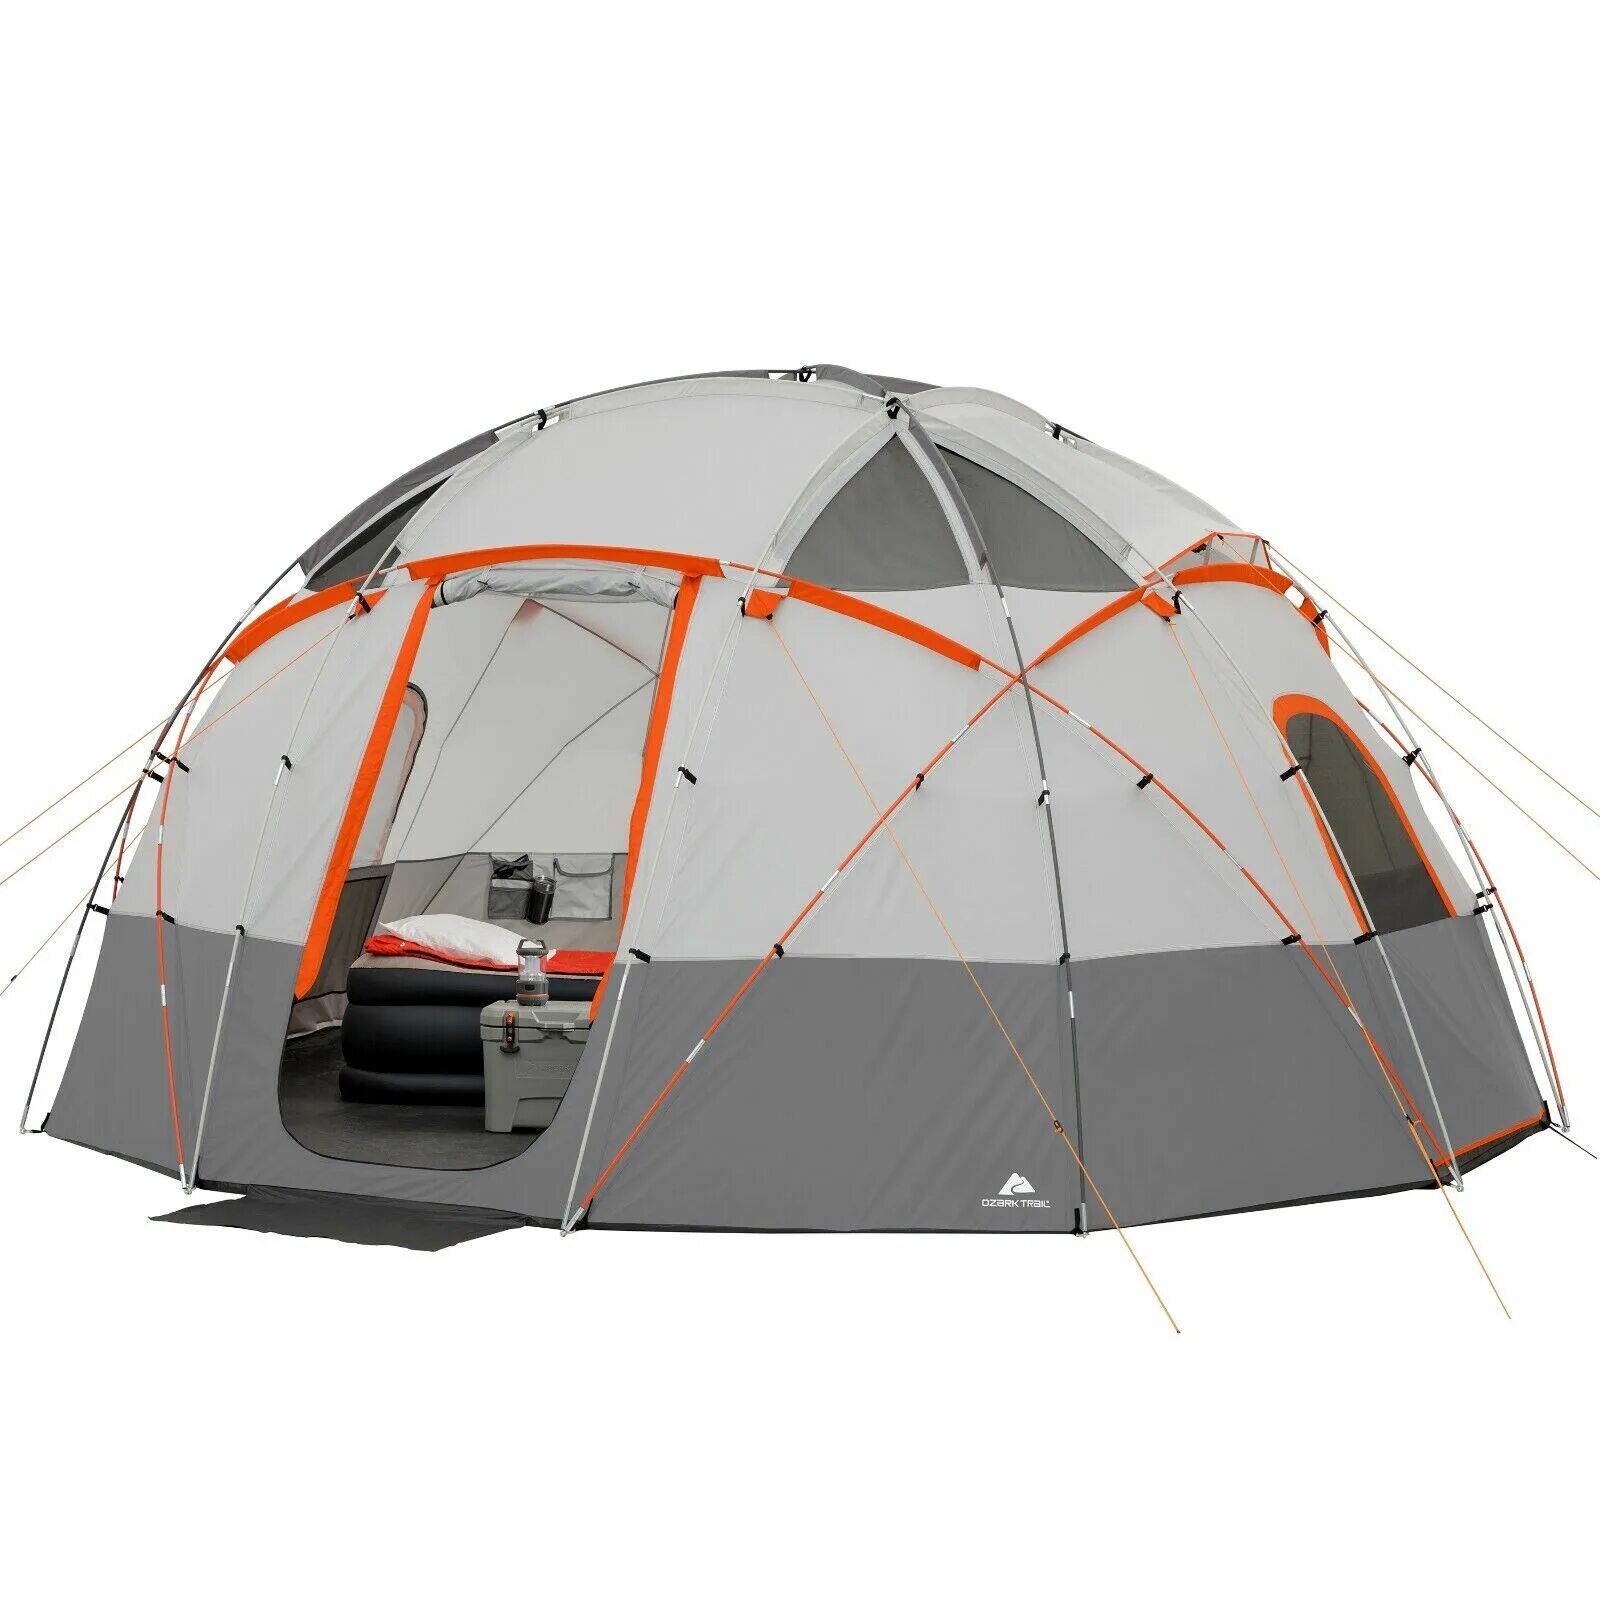 Туристические палатки тент. Ozark Trail палатка. Палатка Basecamp Tent. Палатка Ozark Trail 4 места. Палатка Cabin Dome oz-10.